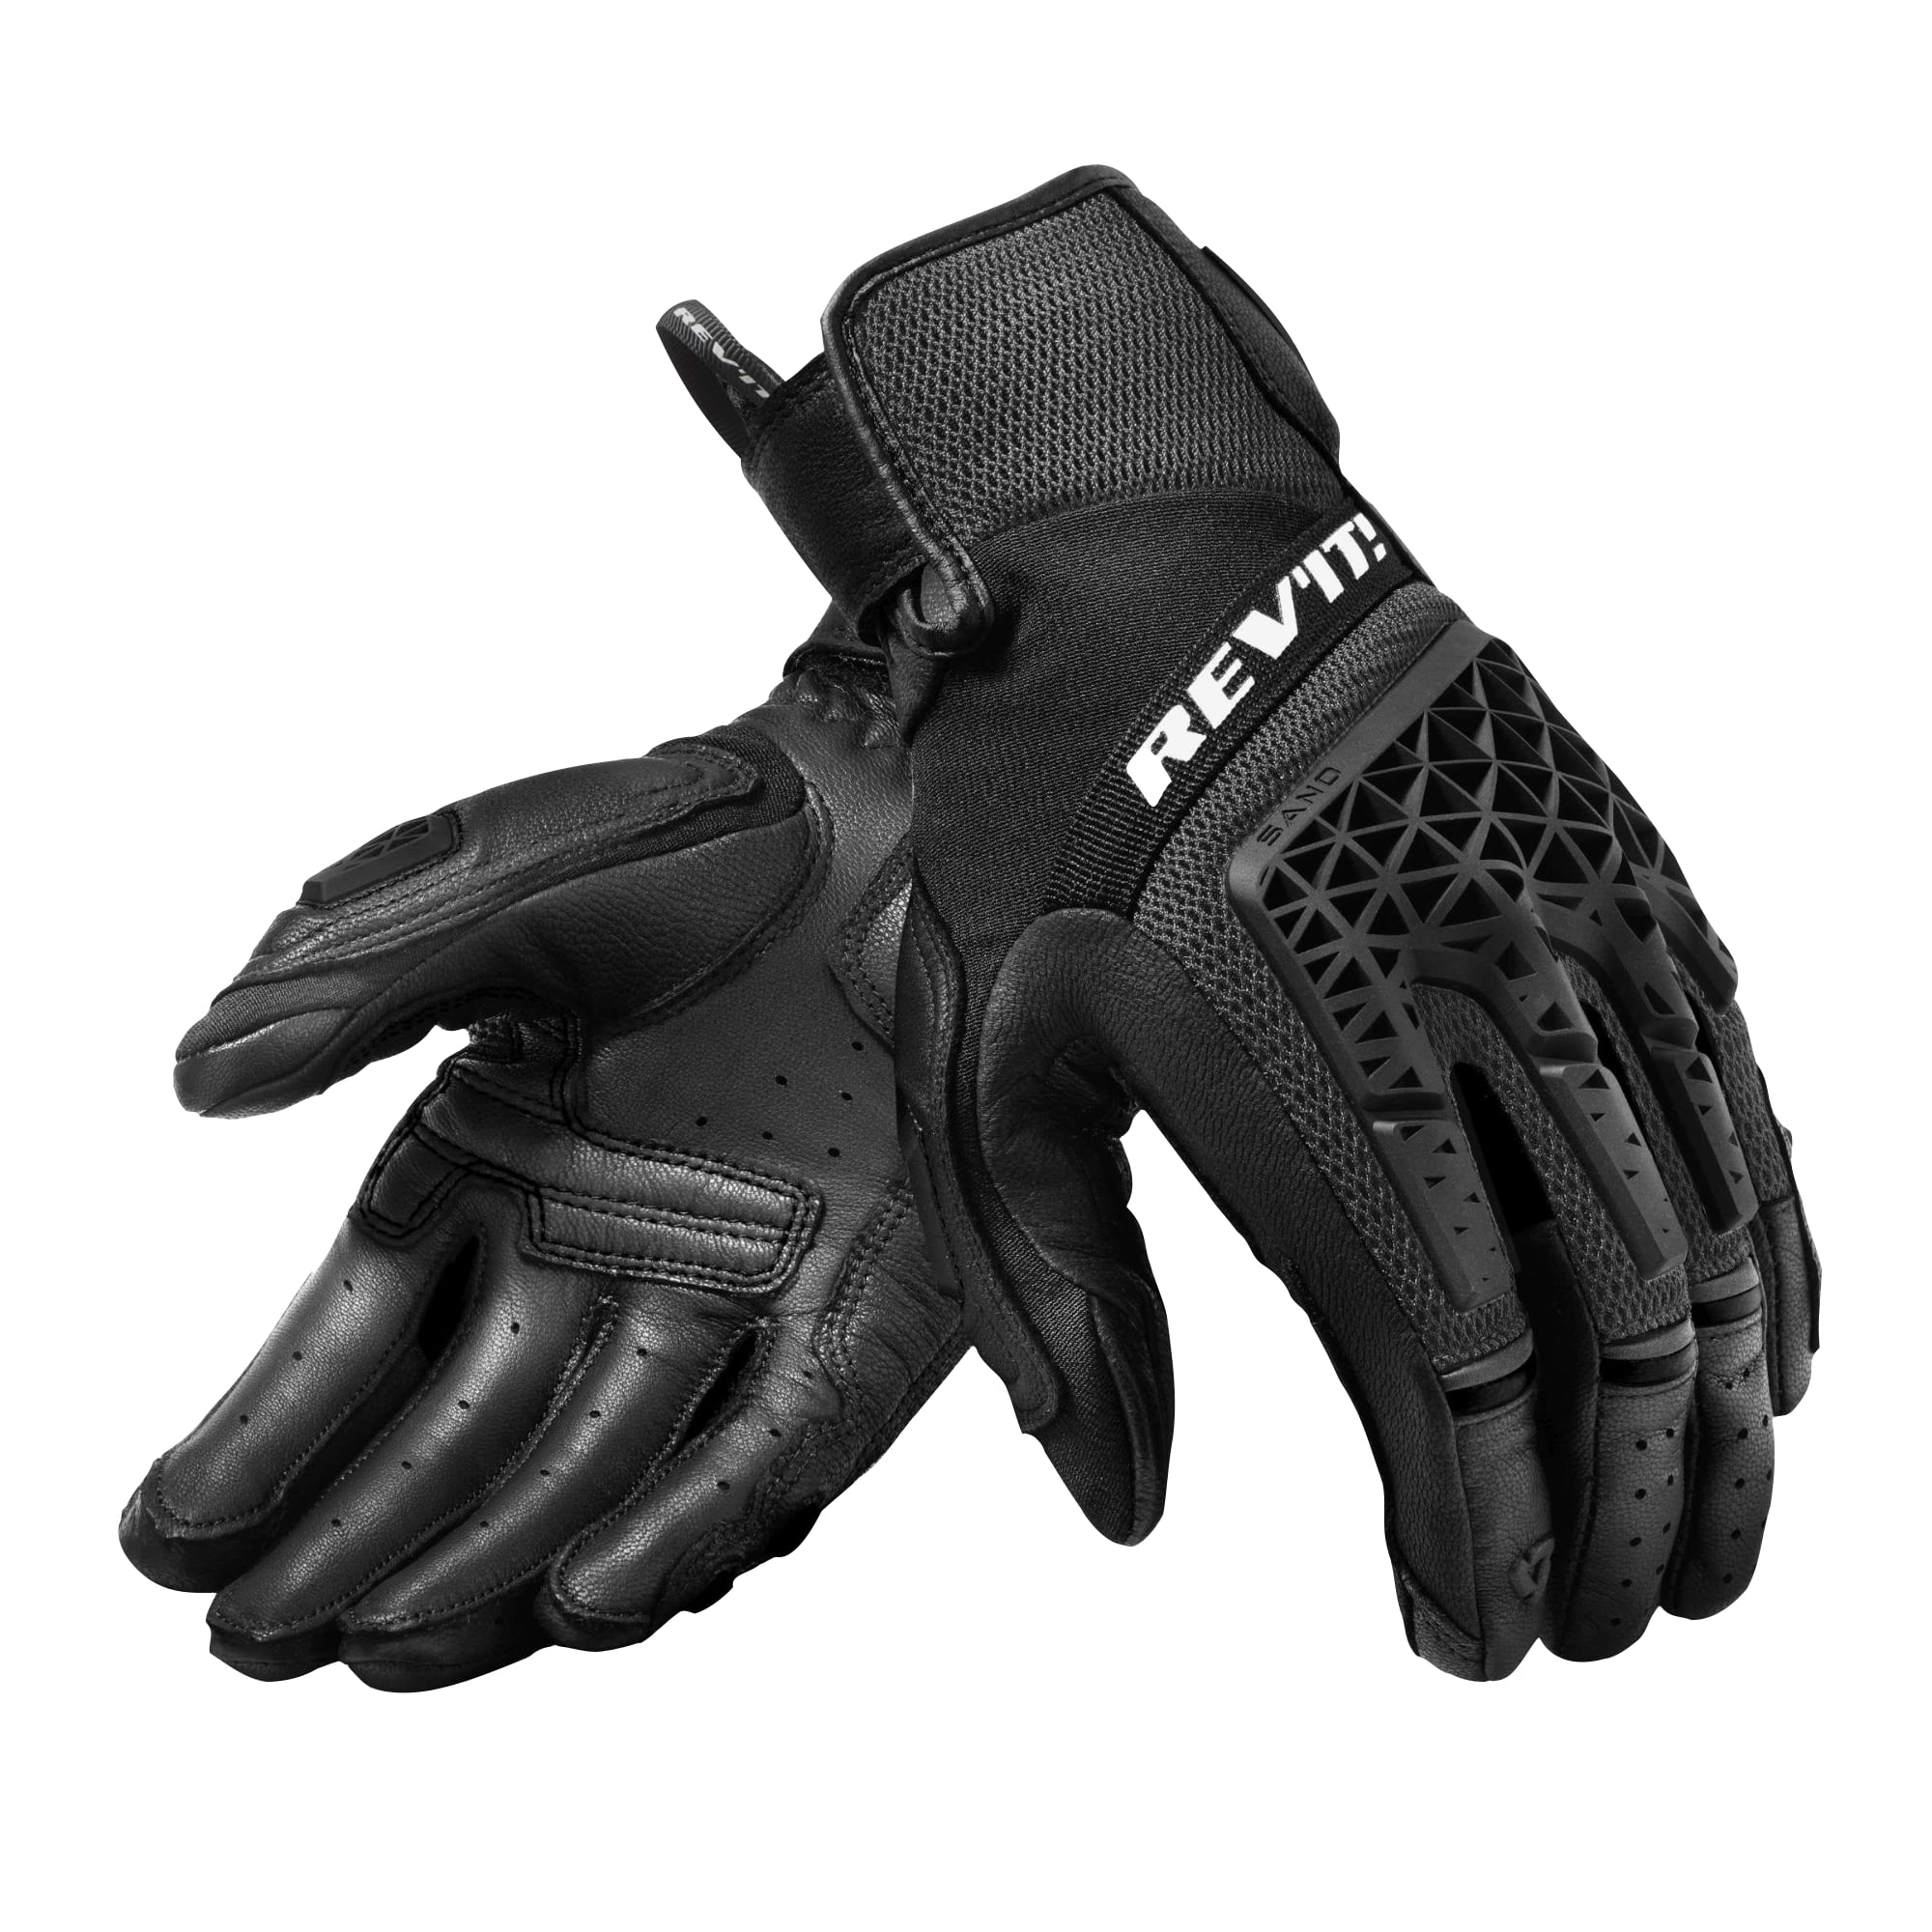 Sand Spada Rigger Leather Waterproof Motorcycle Motorbike Gloves 